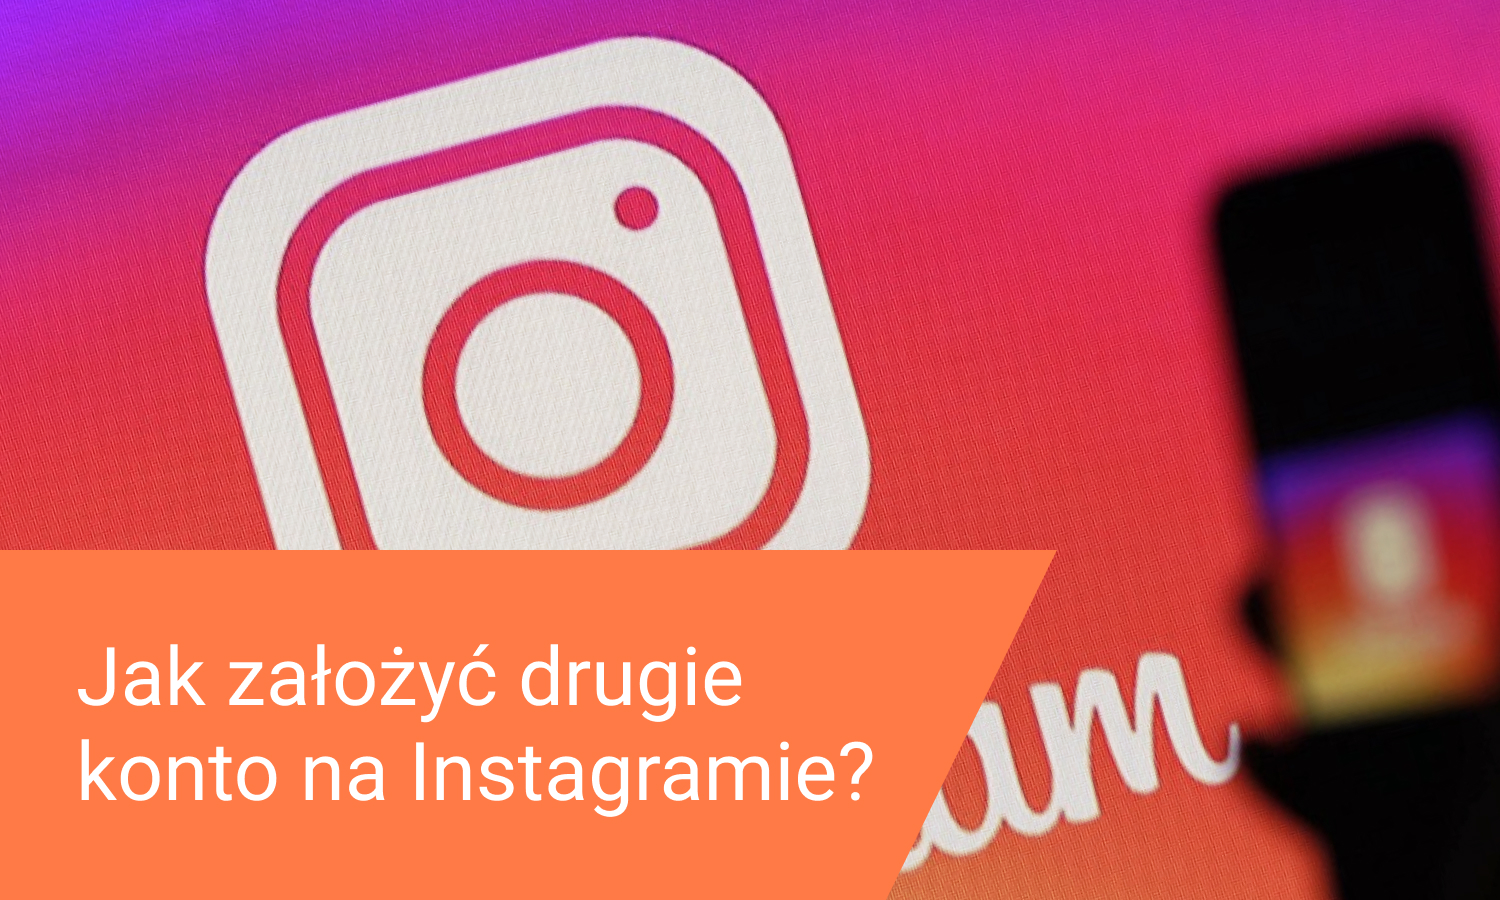 Jak założyć drugie konto na Instagramie?